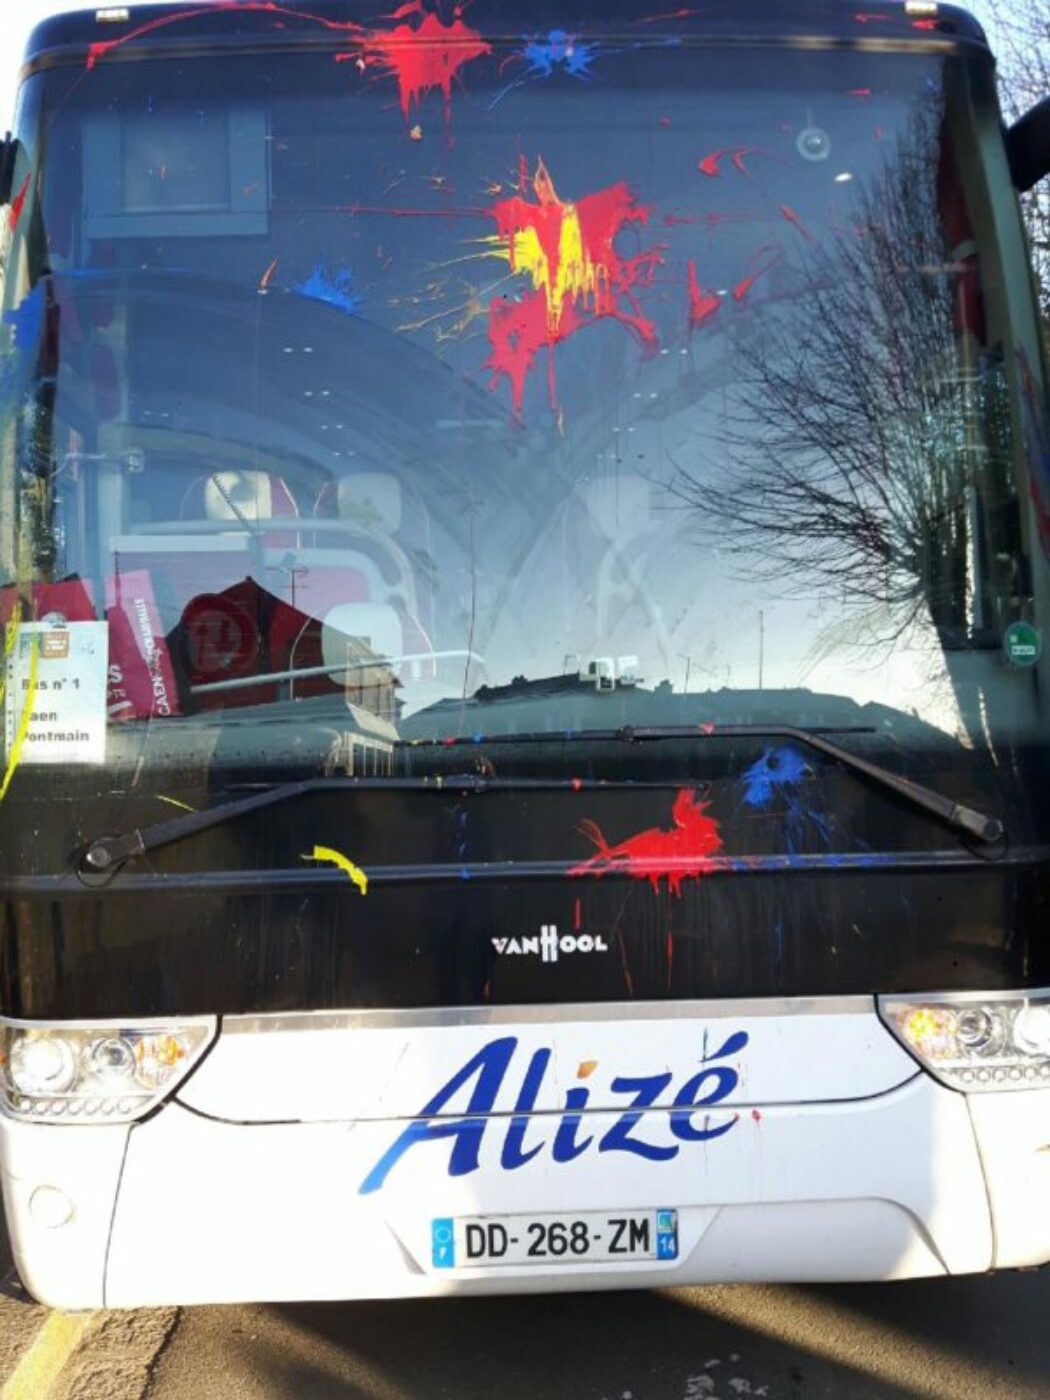 Dimanche, un autre bus a été vandalisé, au départ de Lille